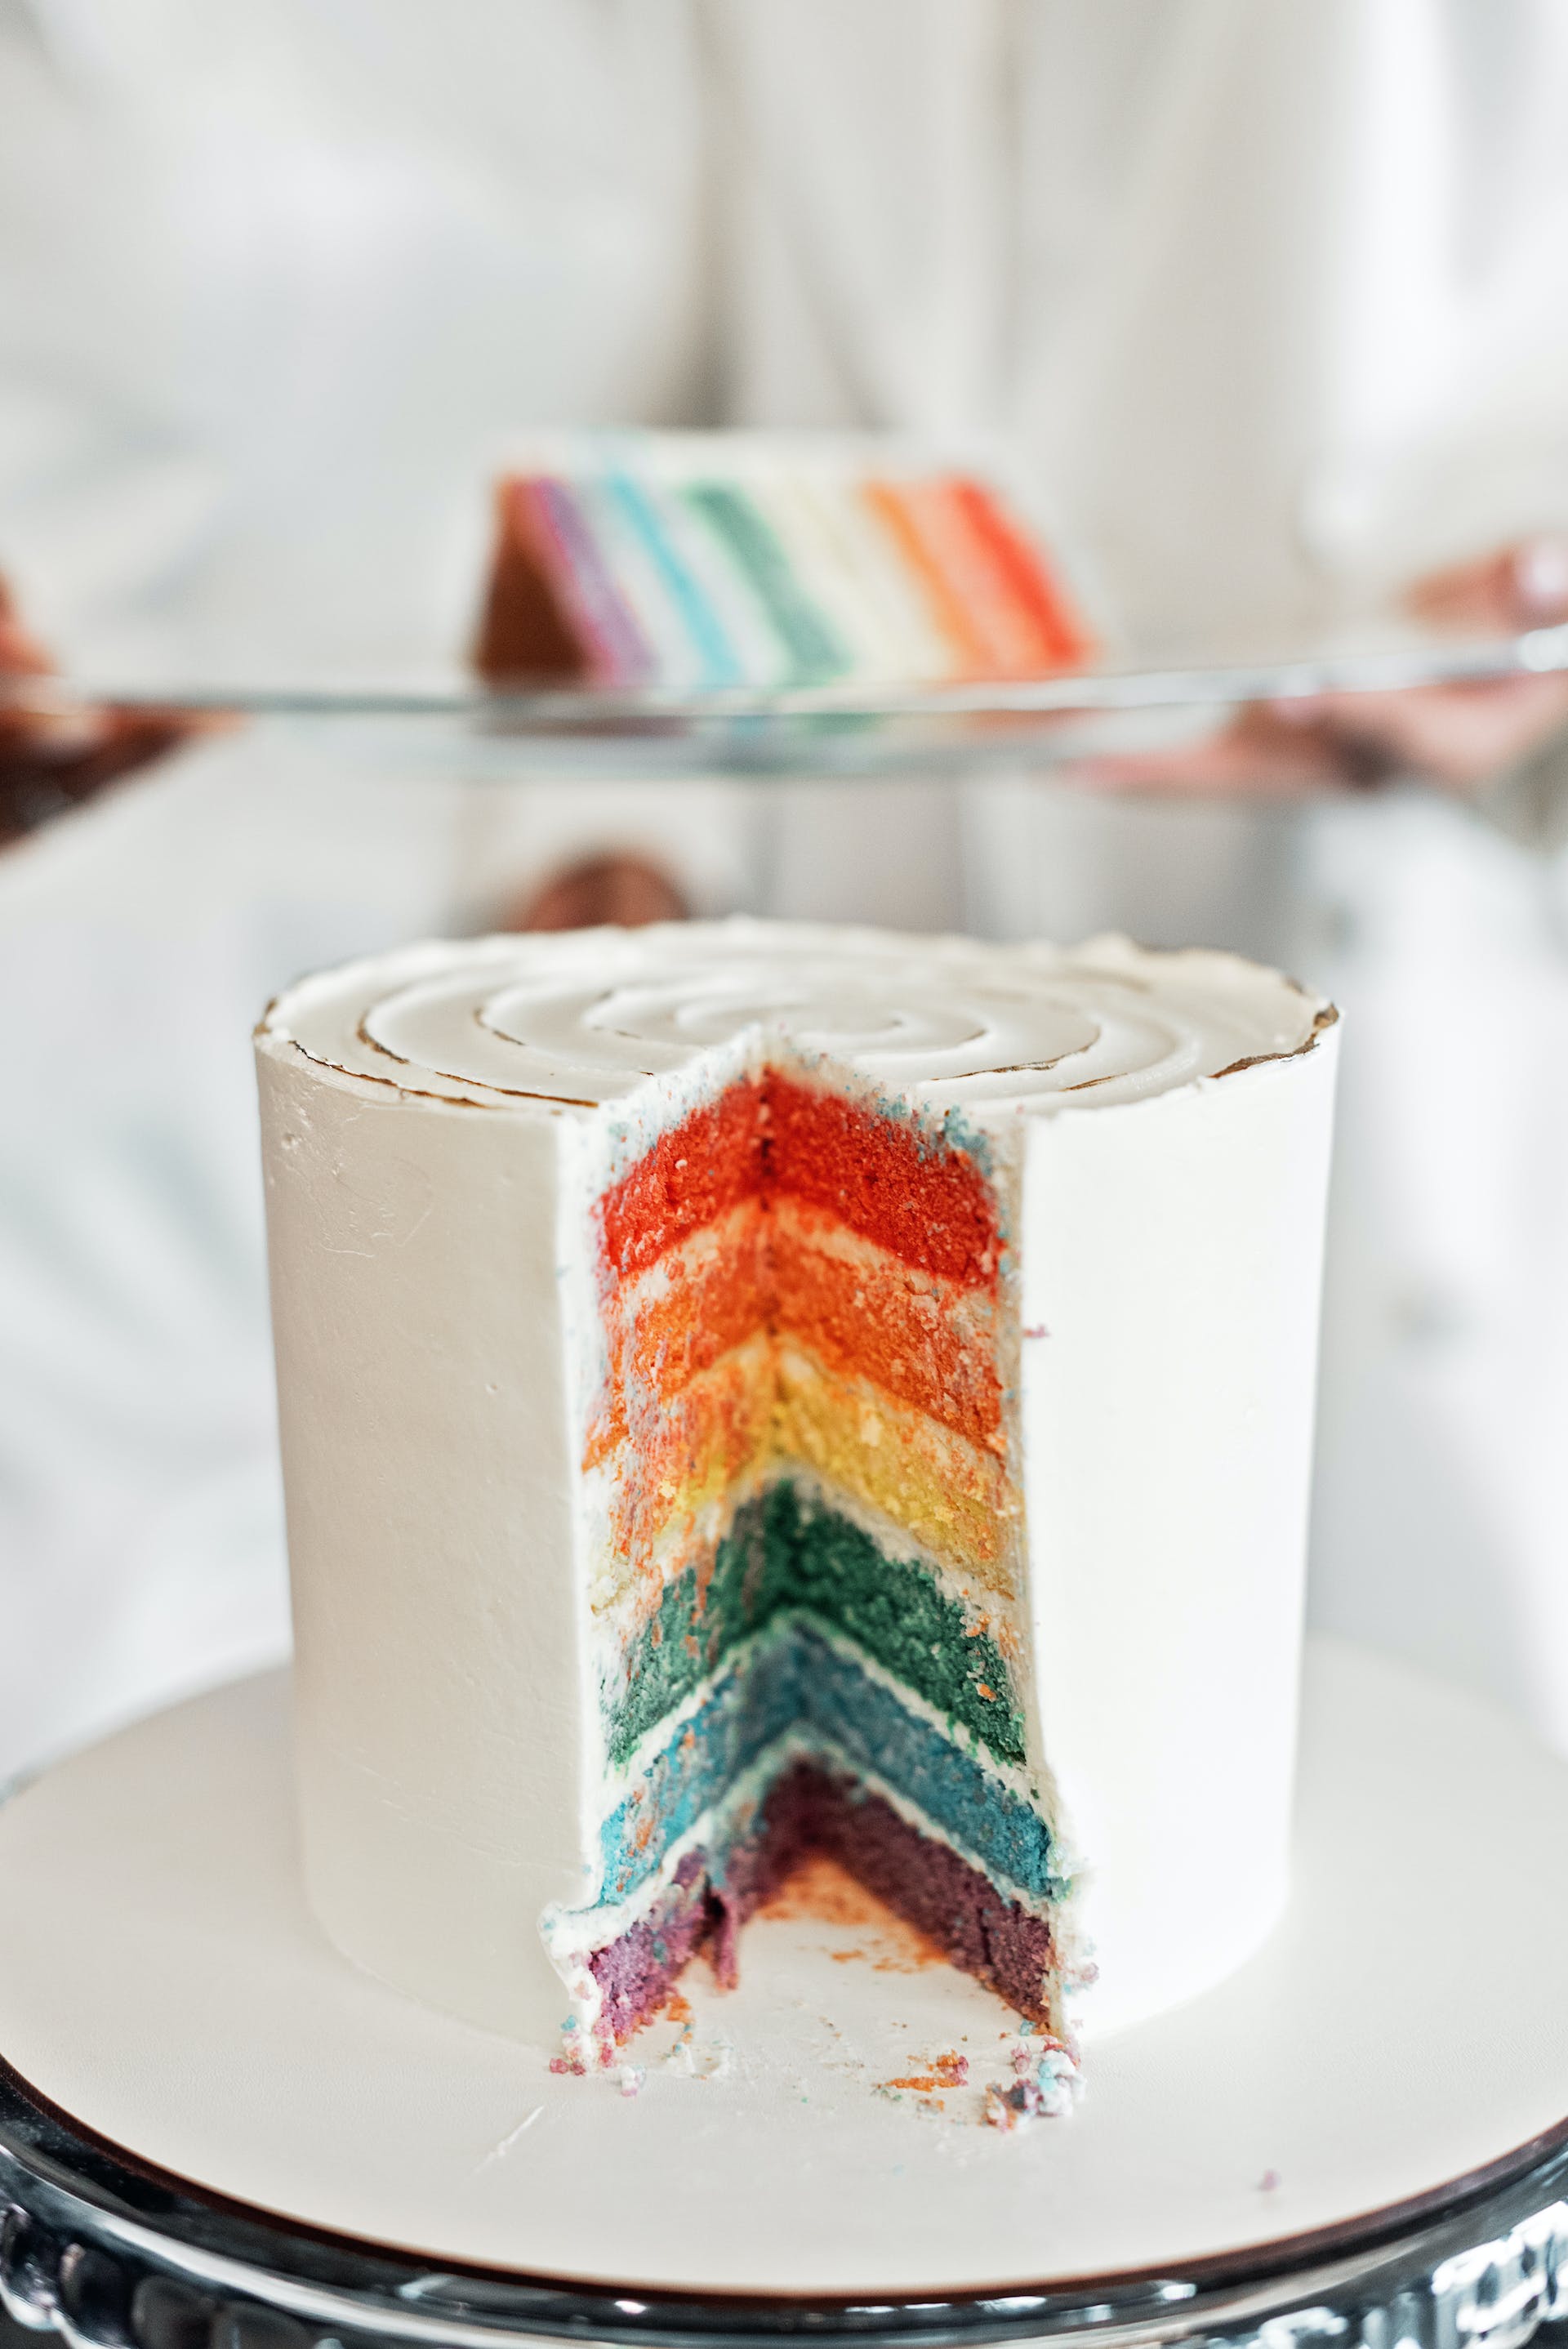 Un grand gâteau avec des couches colorées | Source : Pexels